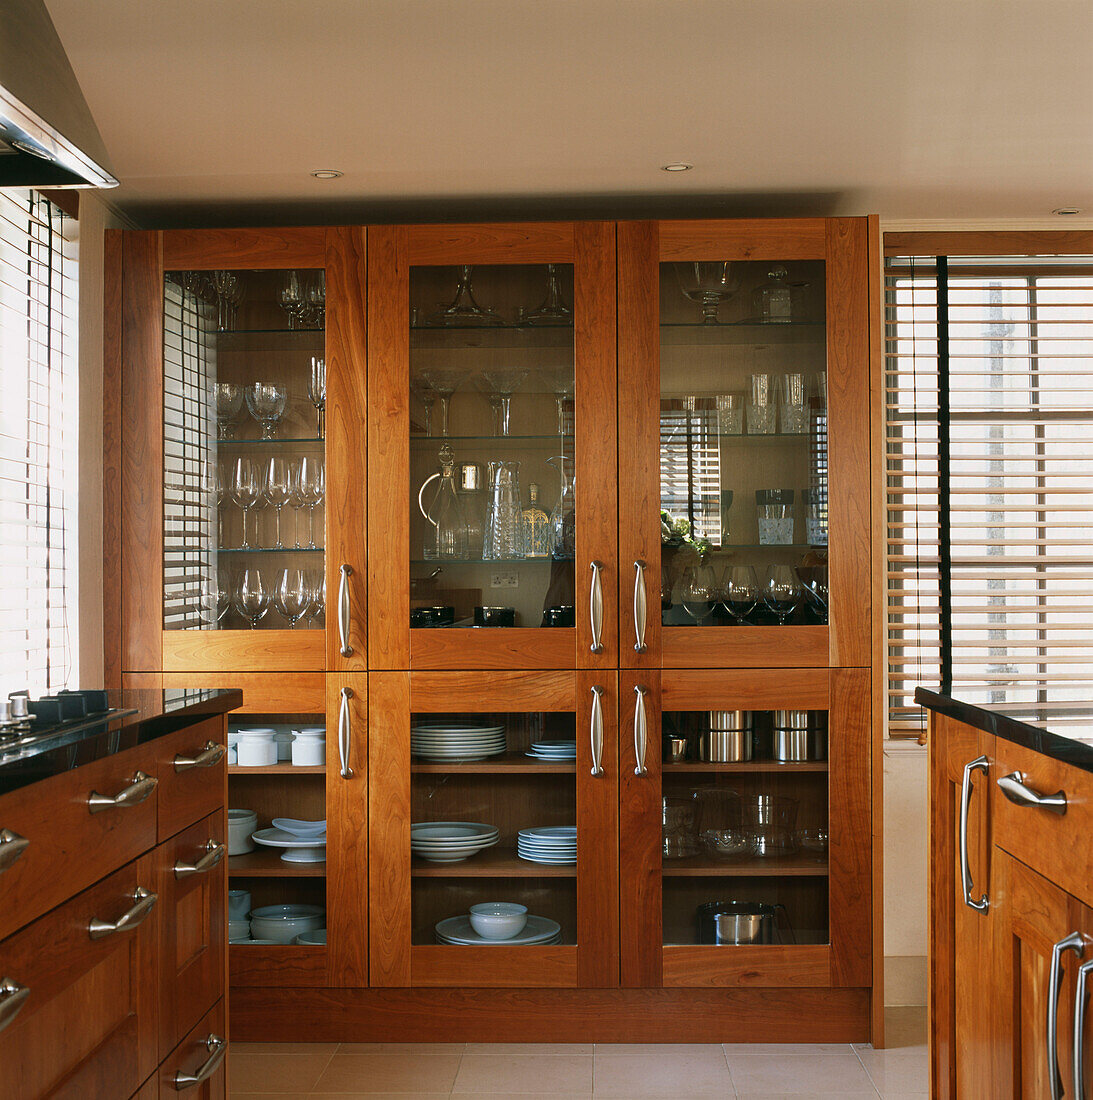 Küchenschränke aus Kirschholz und eine Kommode mit Glasfront, gefüllt mit Geschirr